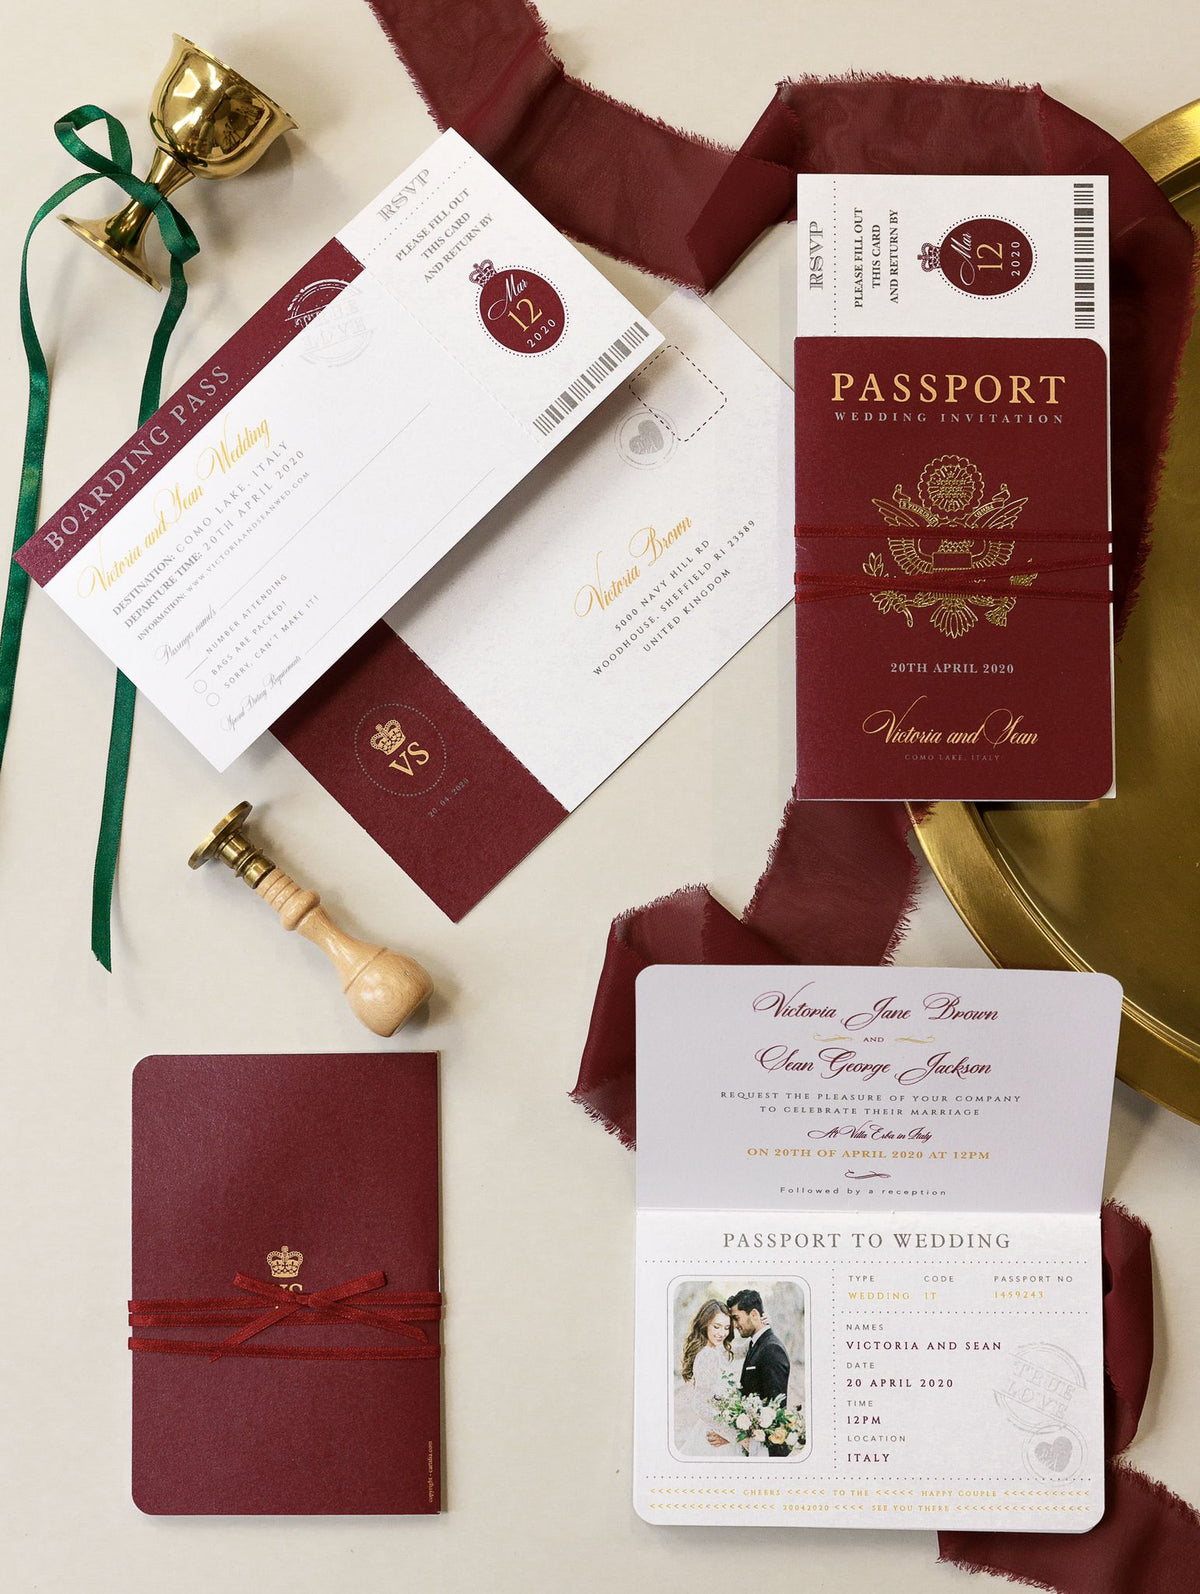 Invitación de boda para pasaporte, color rojo intenso real con lámina brillante + tarjeta de embarque estilo Rsvp